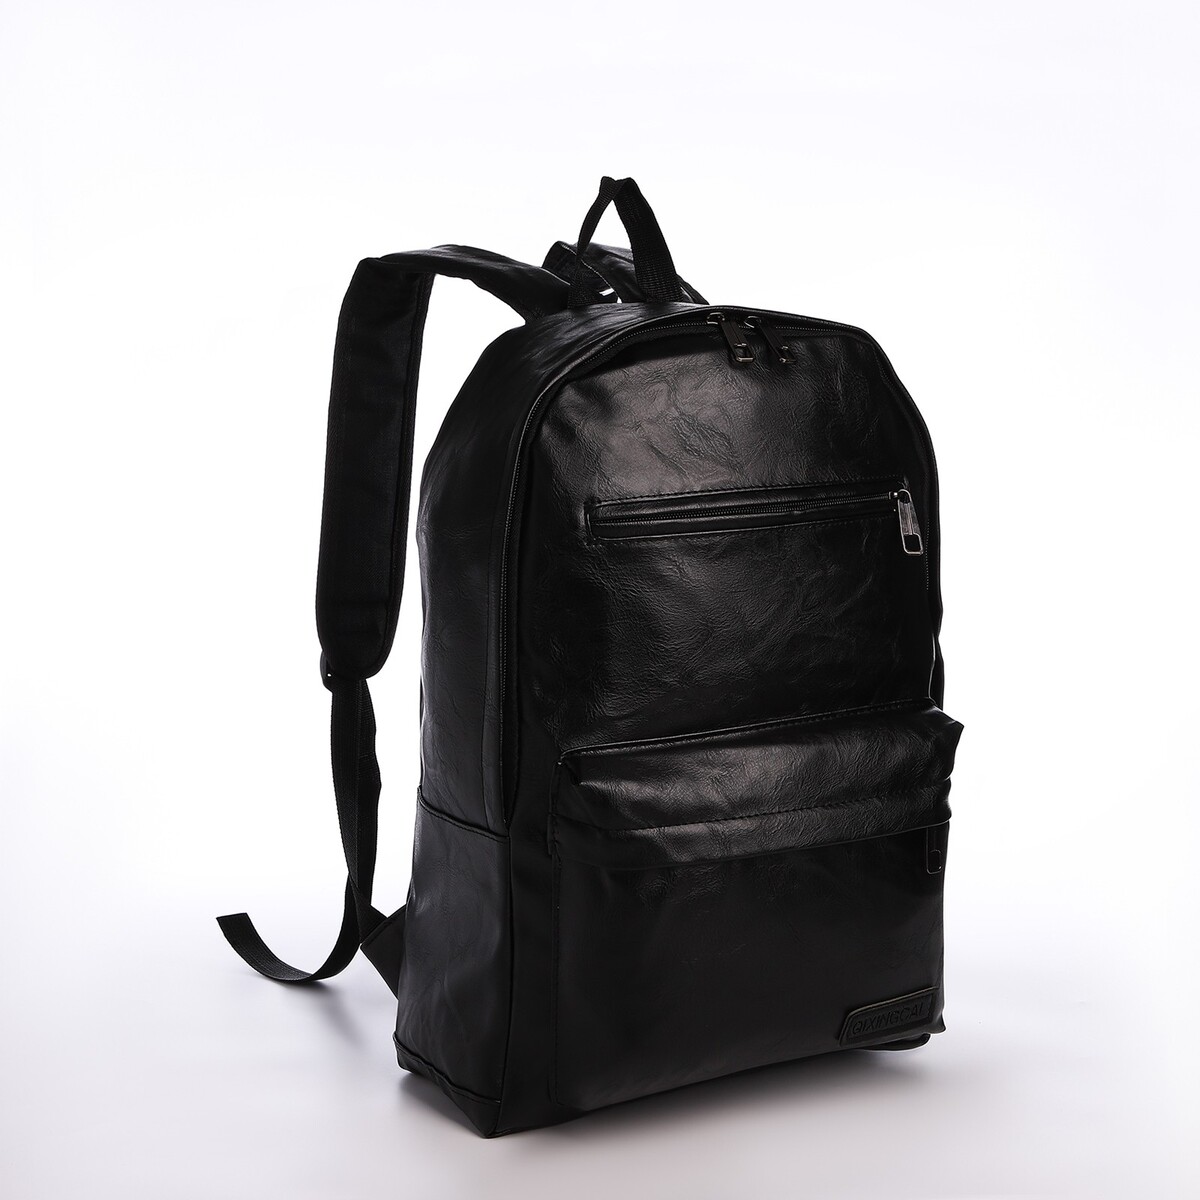 Рюкзак городской из искусственной кожи на молнии, 4 кармана, цвет черный pixie рюкзак городской 267101